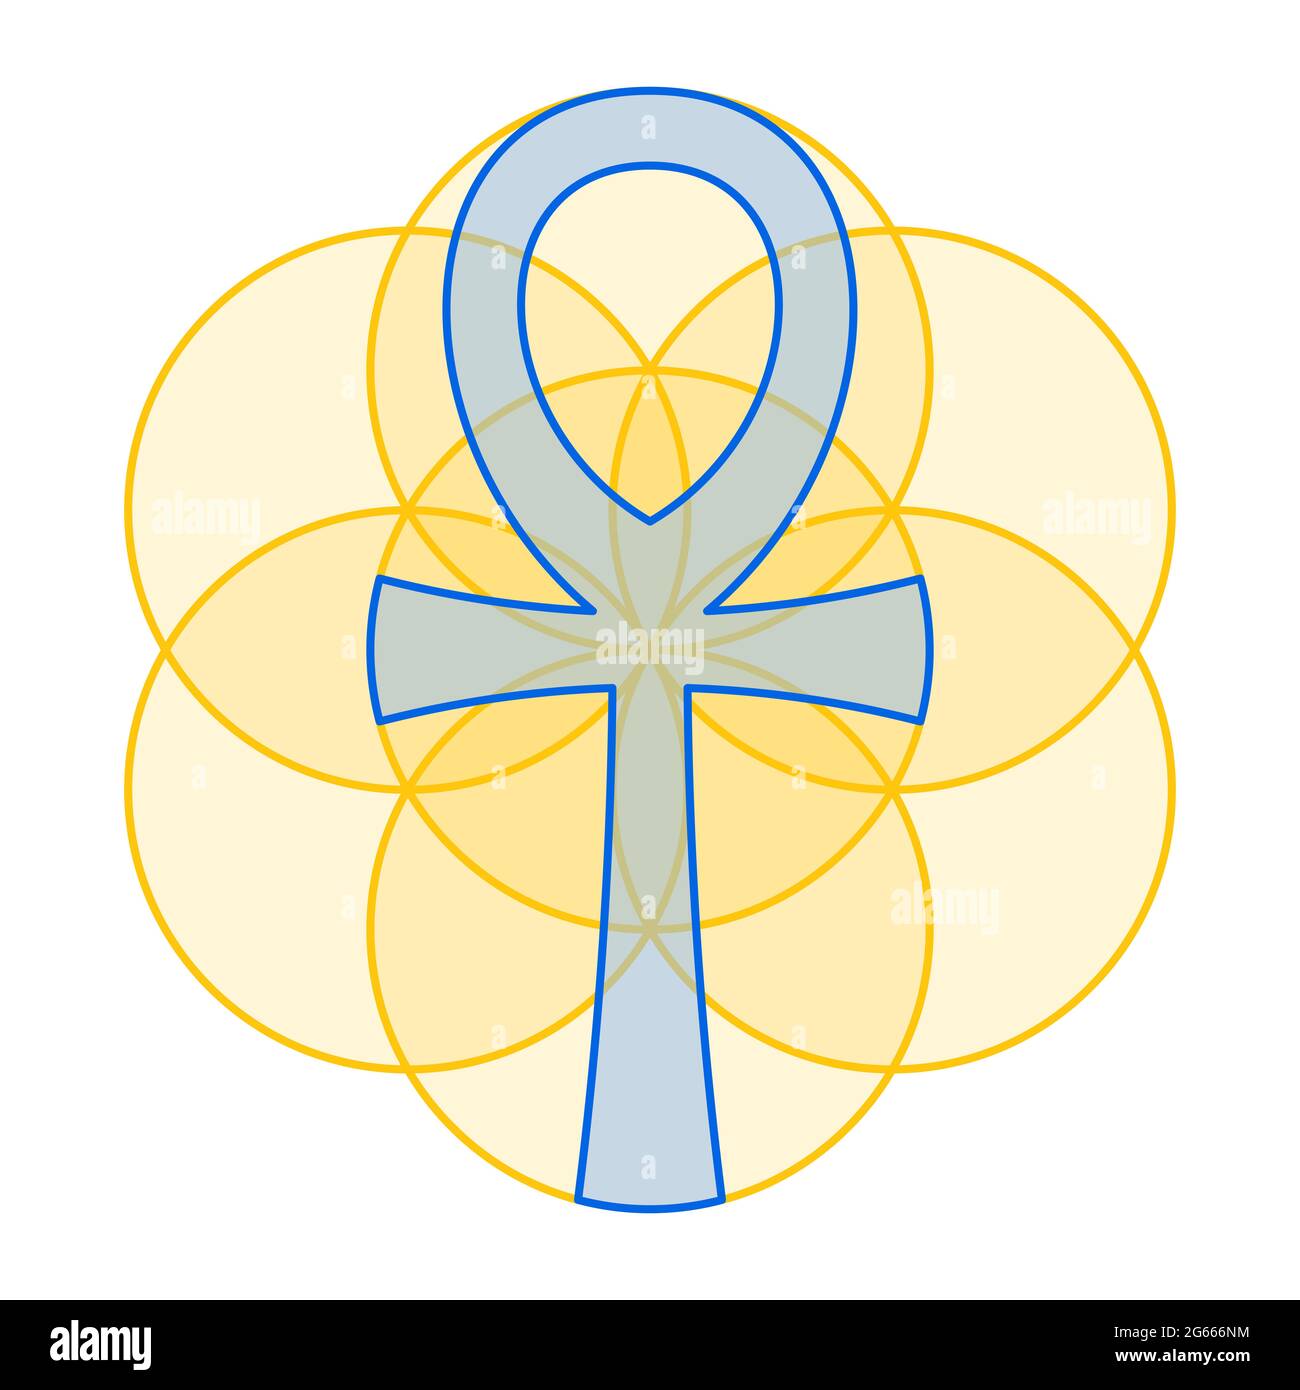 L'Ankh bleu s'adapte parfaitement à la graine de vie dorée. La croix de poignée, un symbole hiéroglyphique égyptien, dans une figure géométrique de cercles se chevauchant. Banque D'Images